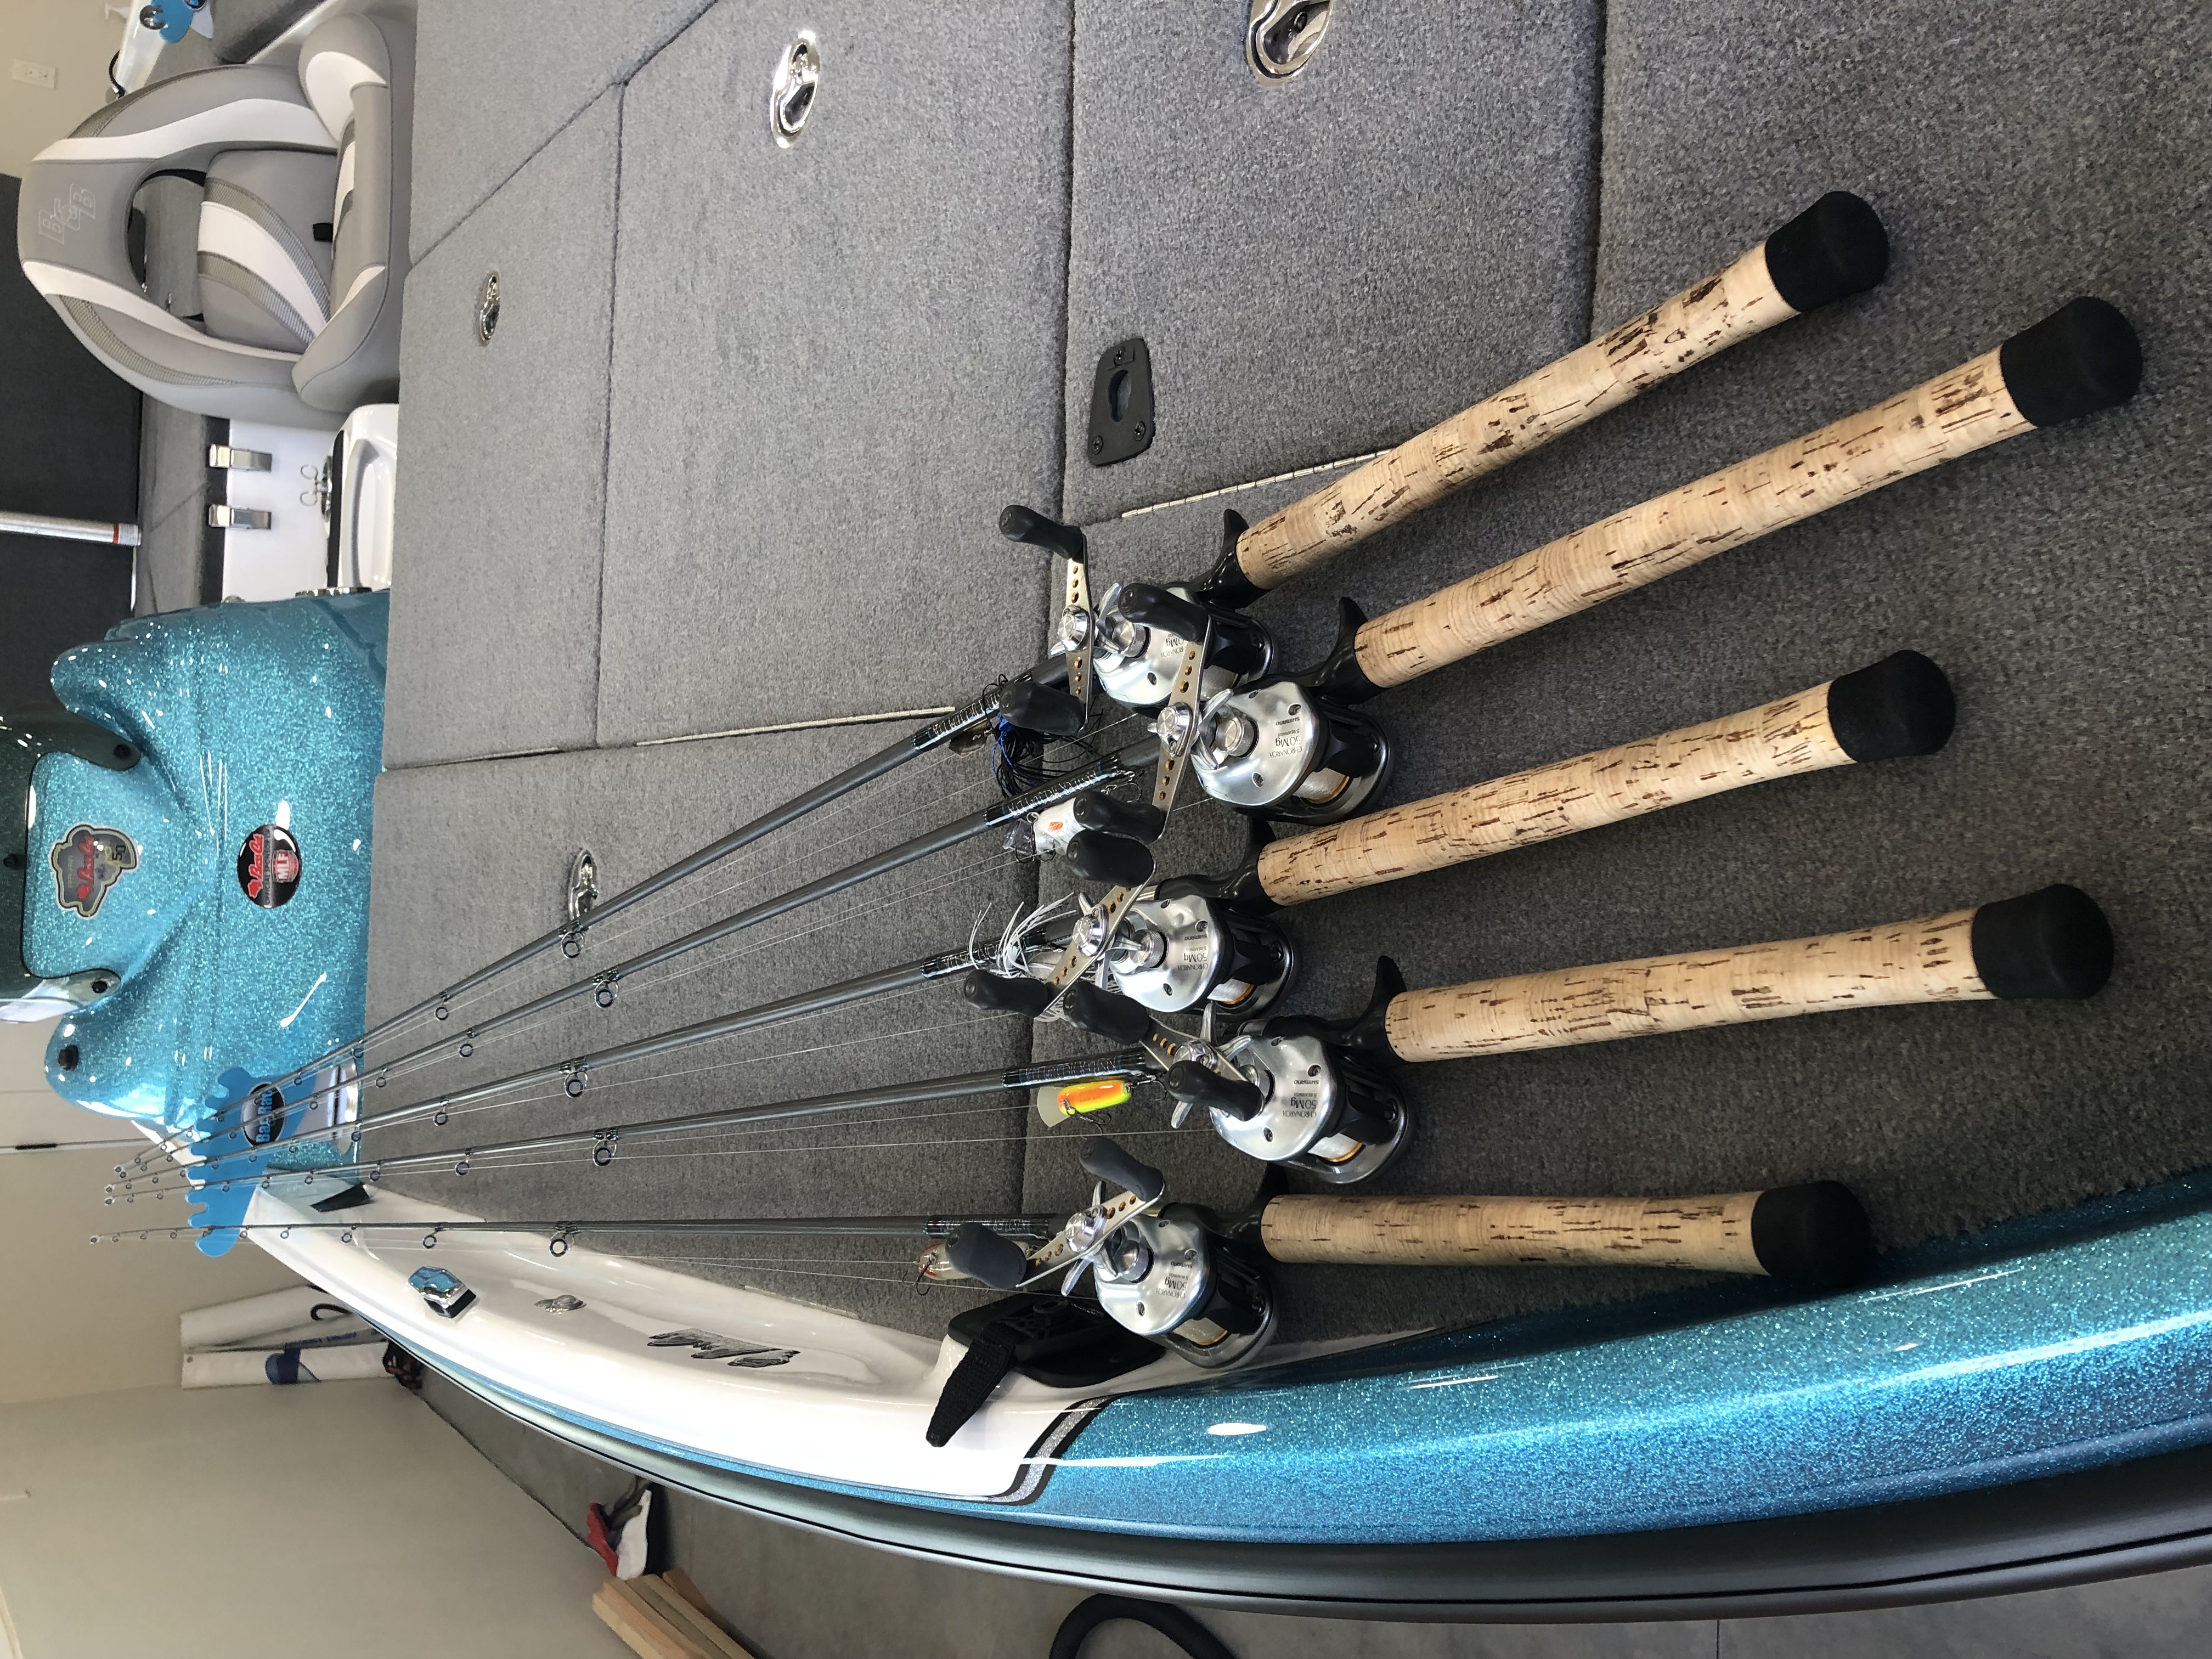 17 Homemade Fishing Rod Holder For Boat Plans  Bass boat storage, Boat rod  holders, Boat storage